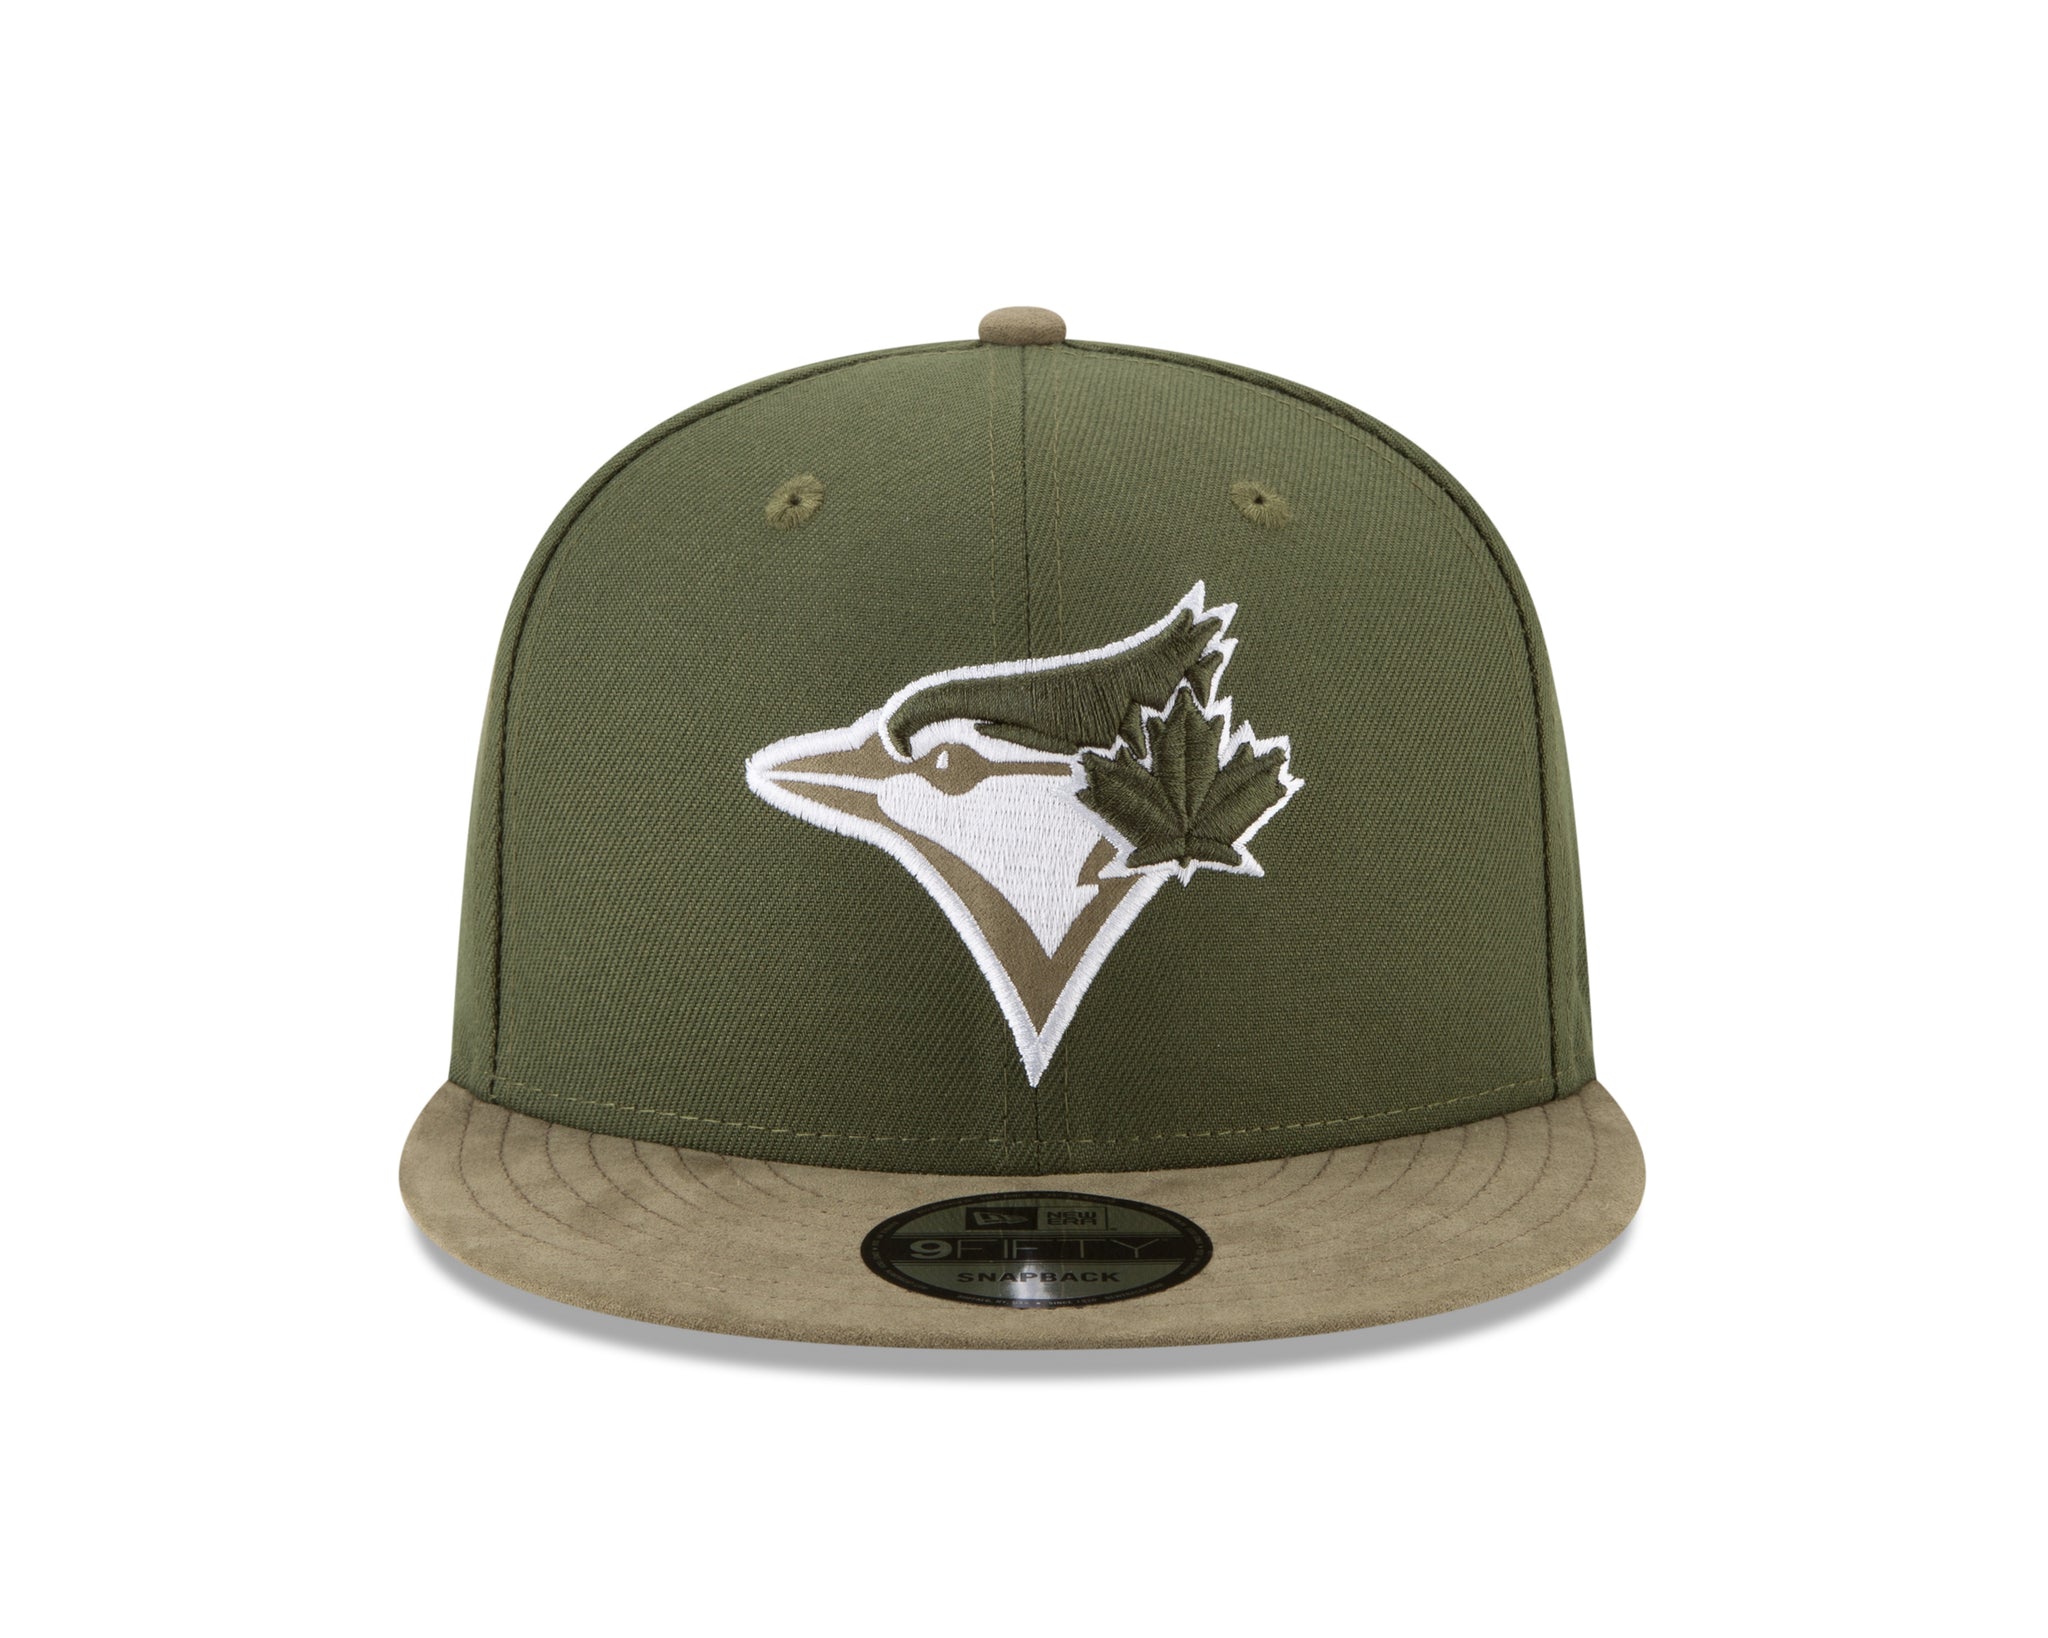 Toronto Blue Jays MLB New Era Snapback Hat Grey